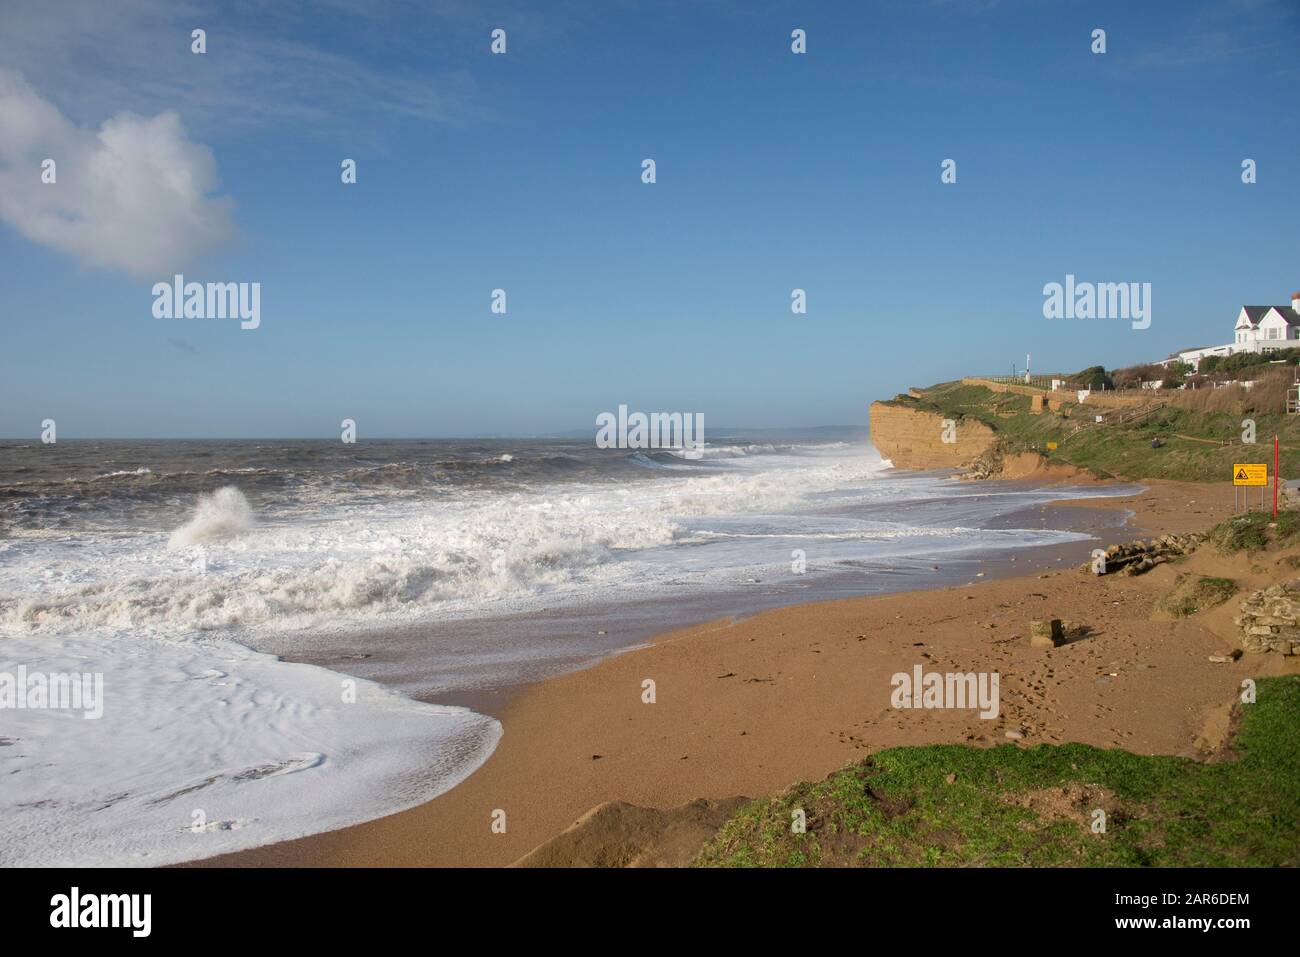 Alte onde bianche che si infrangono sulla spiaggia e sulle scogliere di arenaria durante l'alta marea in una bella giornata a Hive Beach, vicino West Bay, Dorset, gennaio Foto Stock